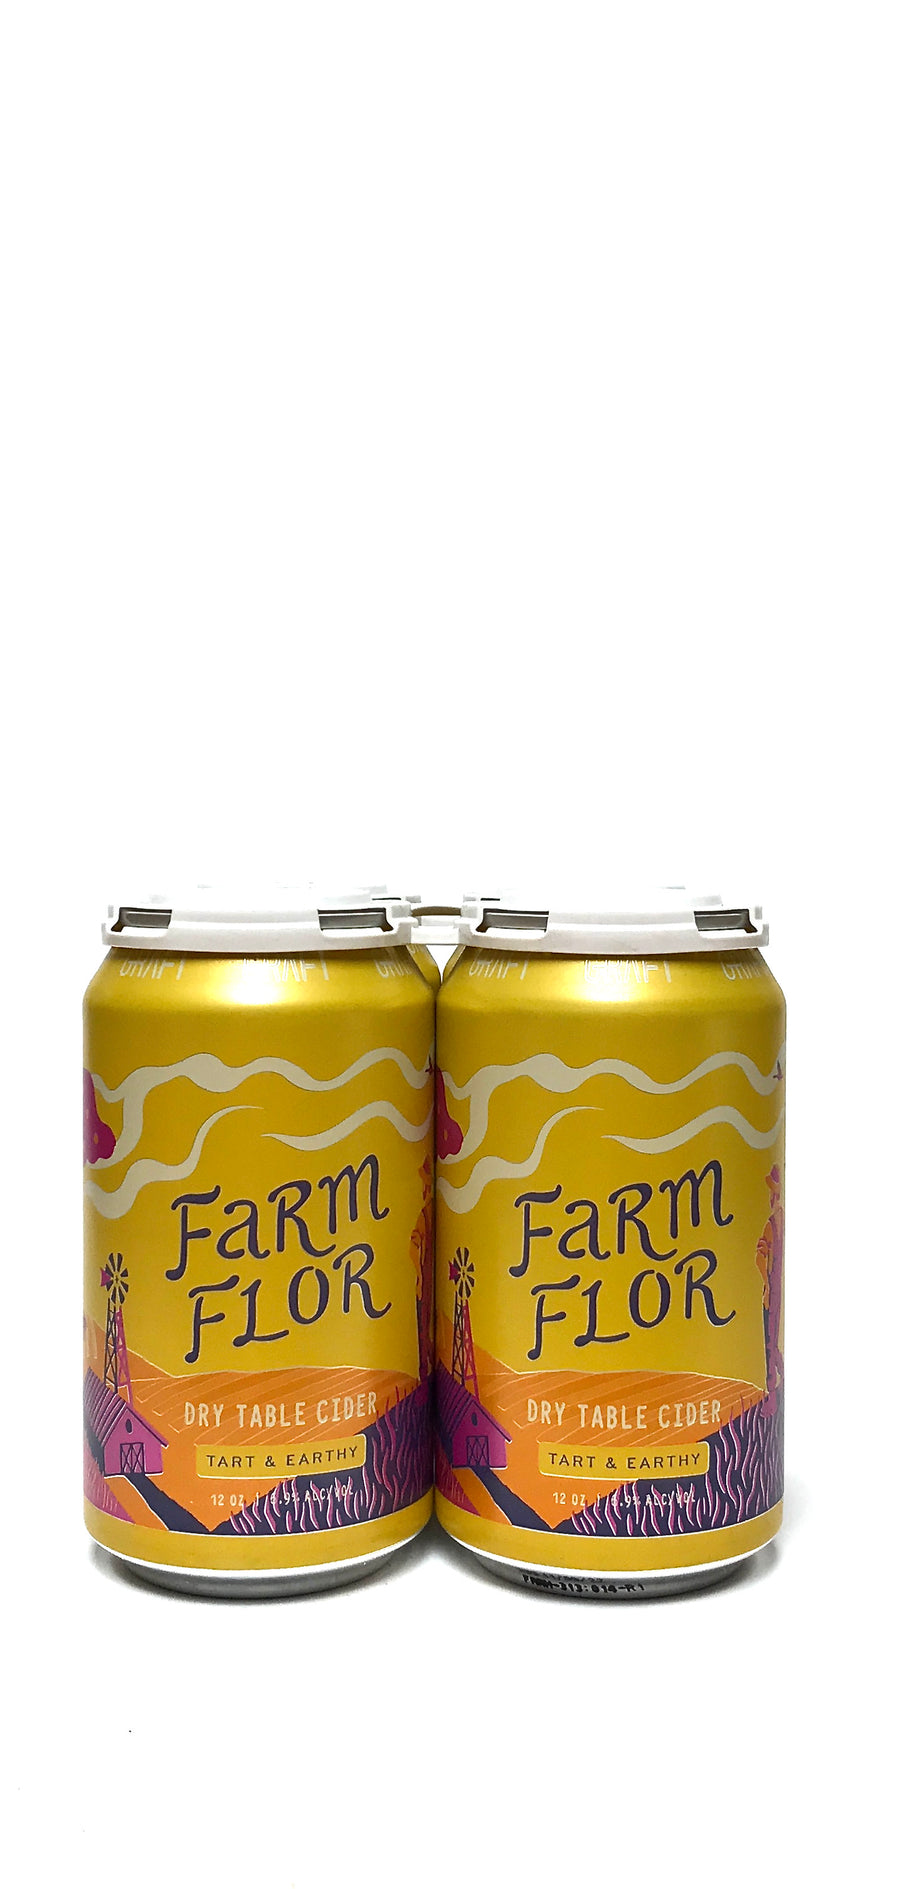 Graft Farm Flor Farmhouse Cider 12oz Can 4-Pack